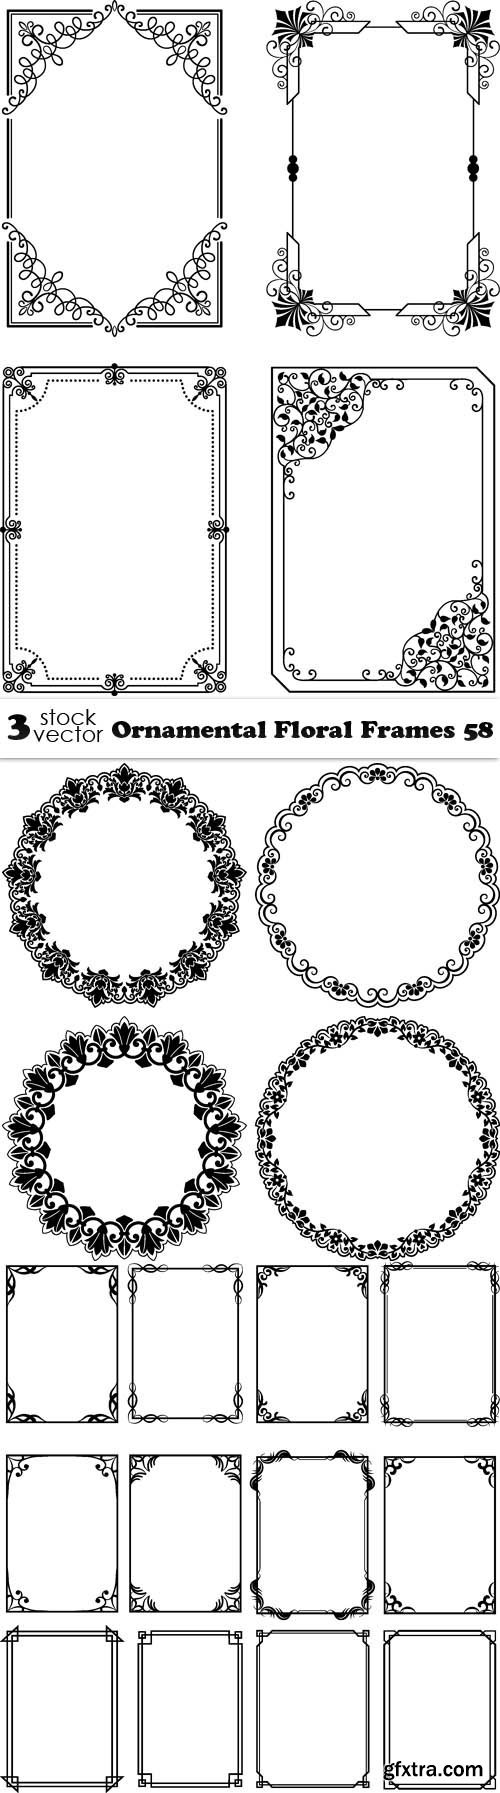 Vectors - Ornamental Floral Frames 58